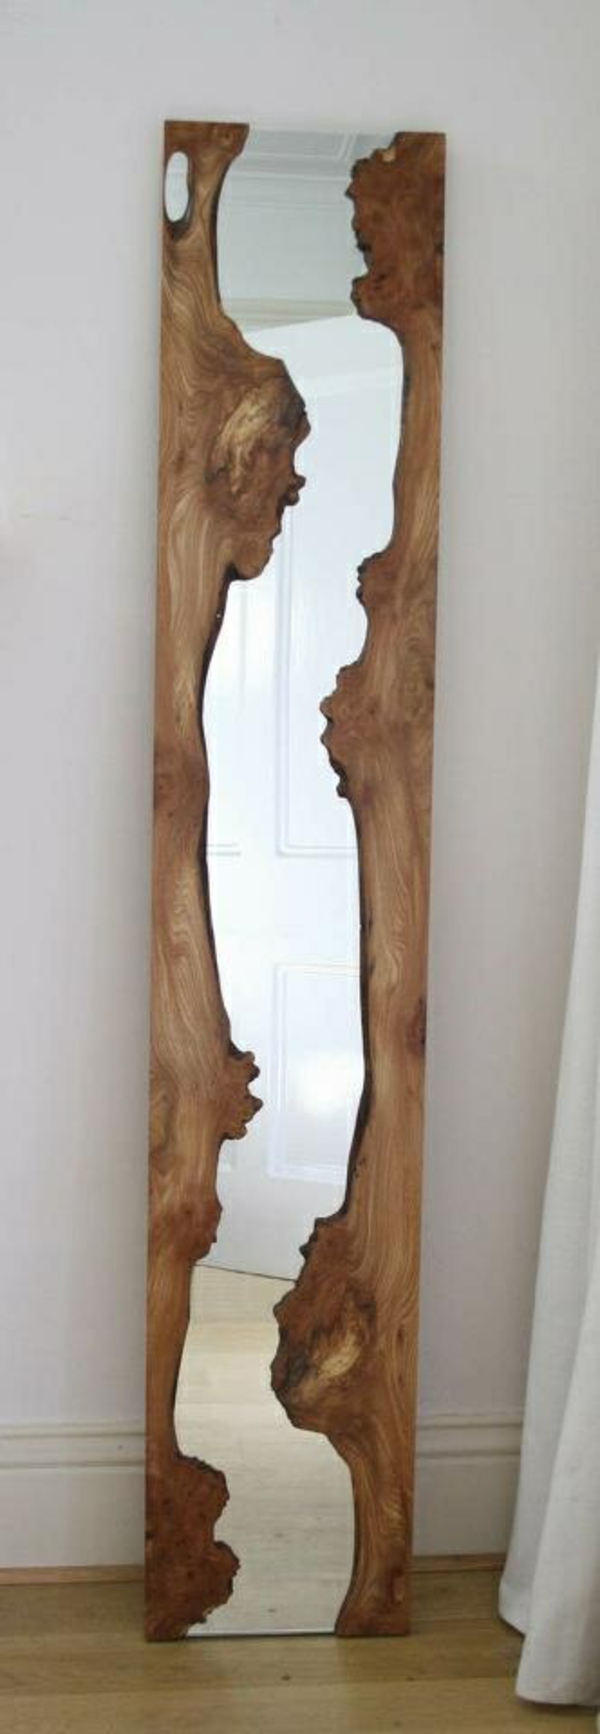 Τοίχος διακόσμηση ξύλινο διάδρομο τοίχο σχεδιασμό καθρέφτη ξύλινο πλαίσιο